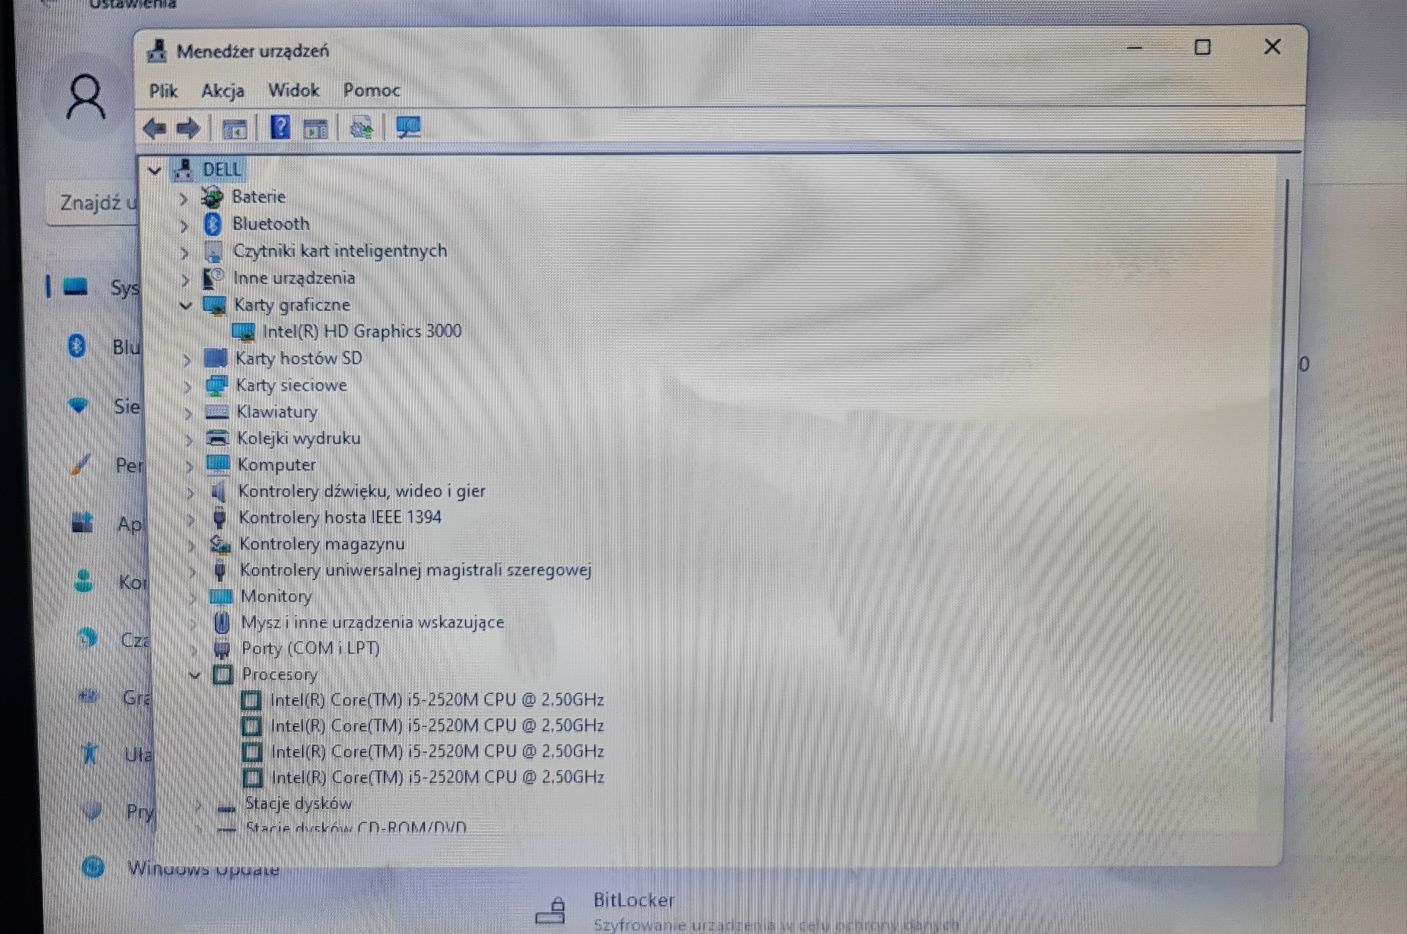 Laptop DELL, I5, 6GB ram, 1 TB hdd, 15,6 cala